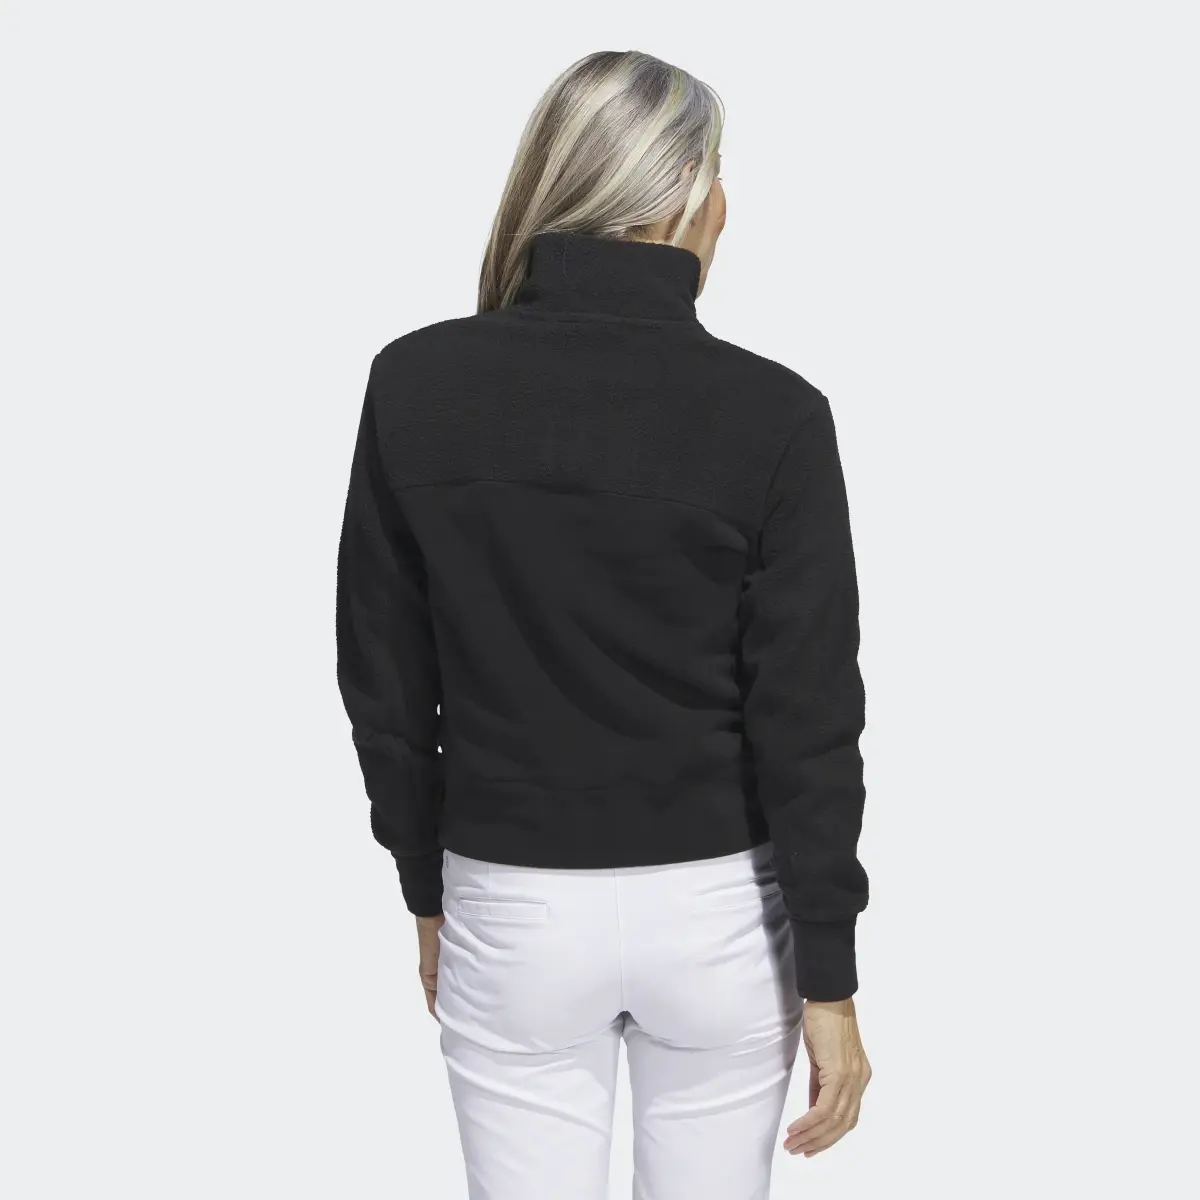 Adidas Full-Zip Fleece Jacket. 3